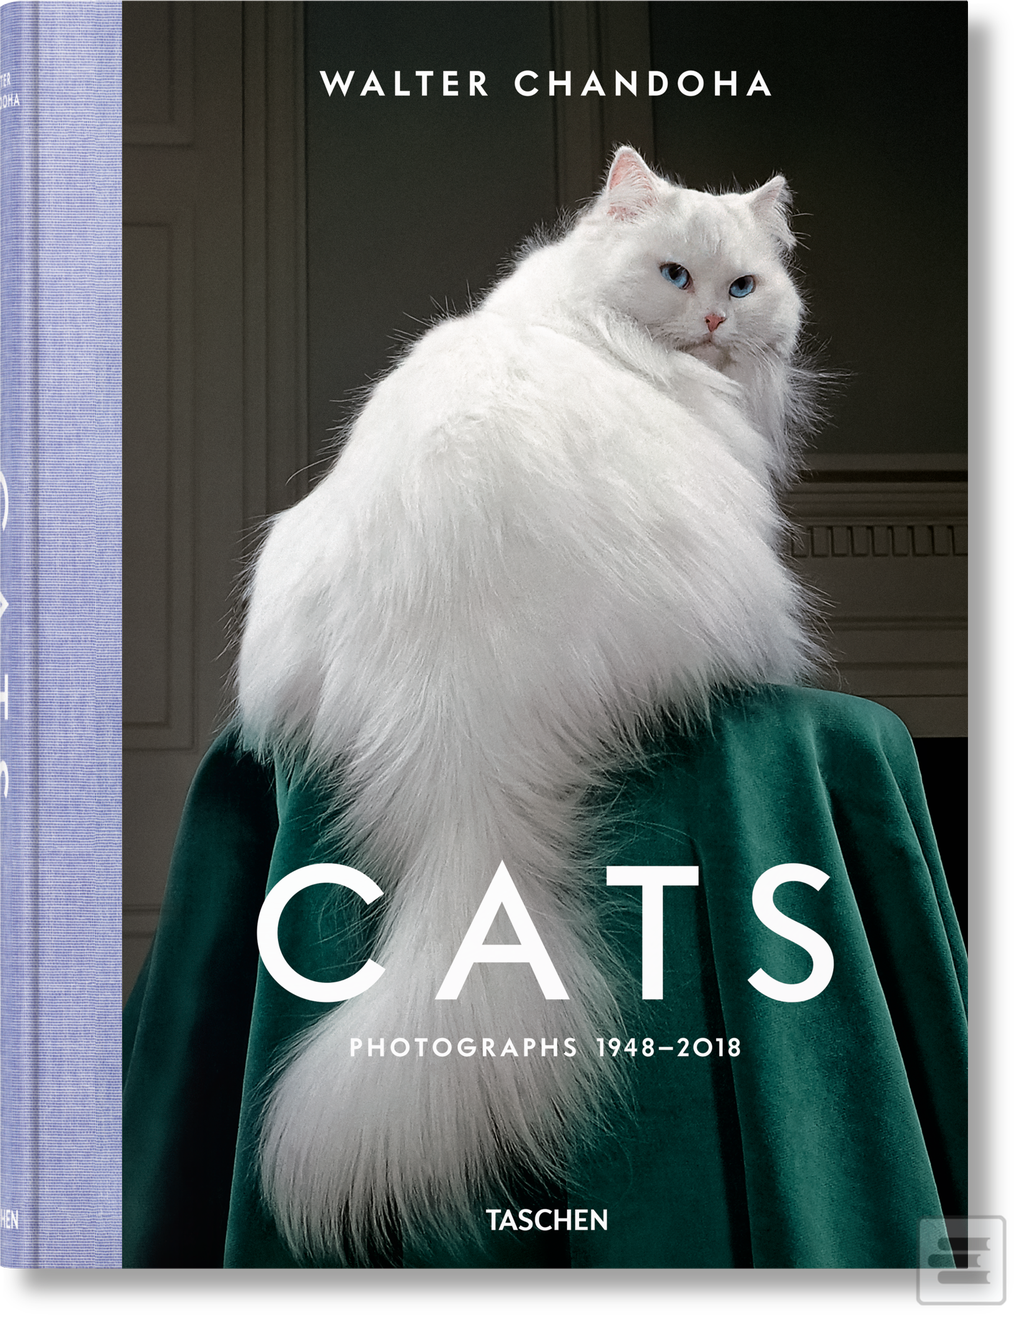 Kniha: Walter Chandoha. Cats